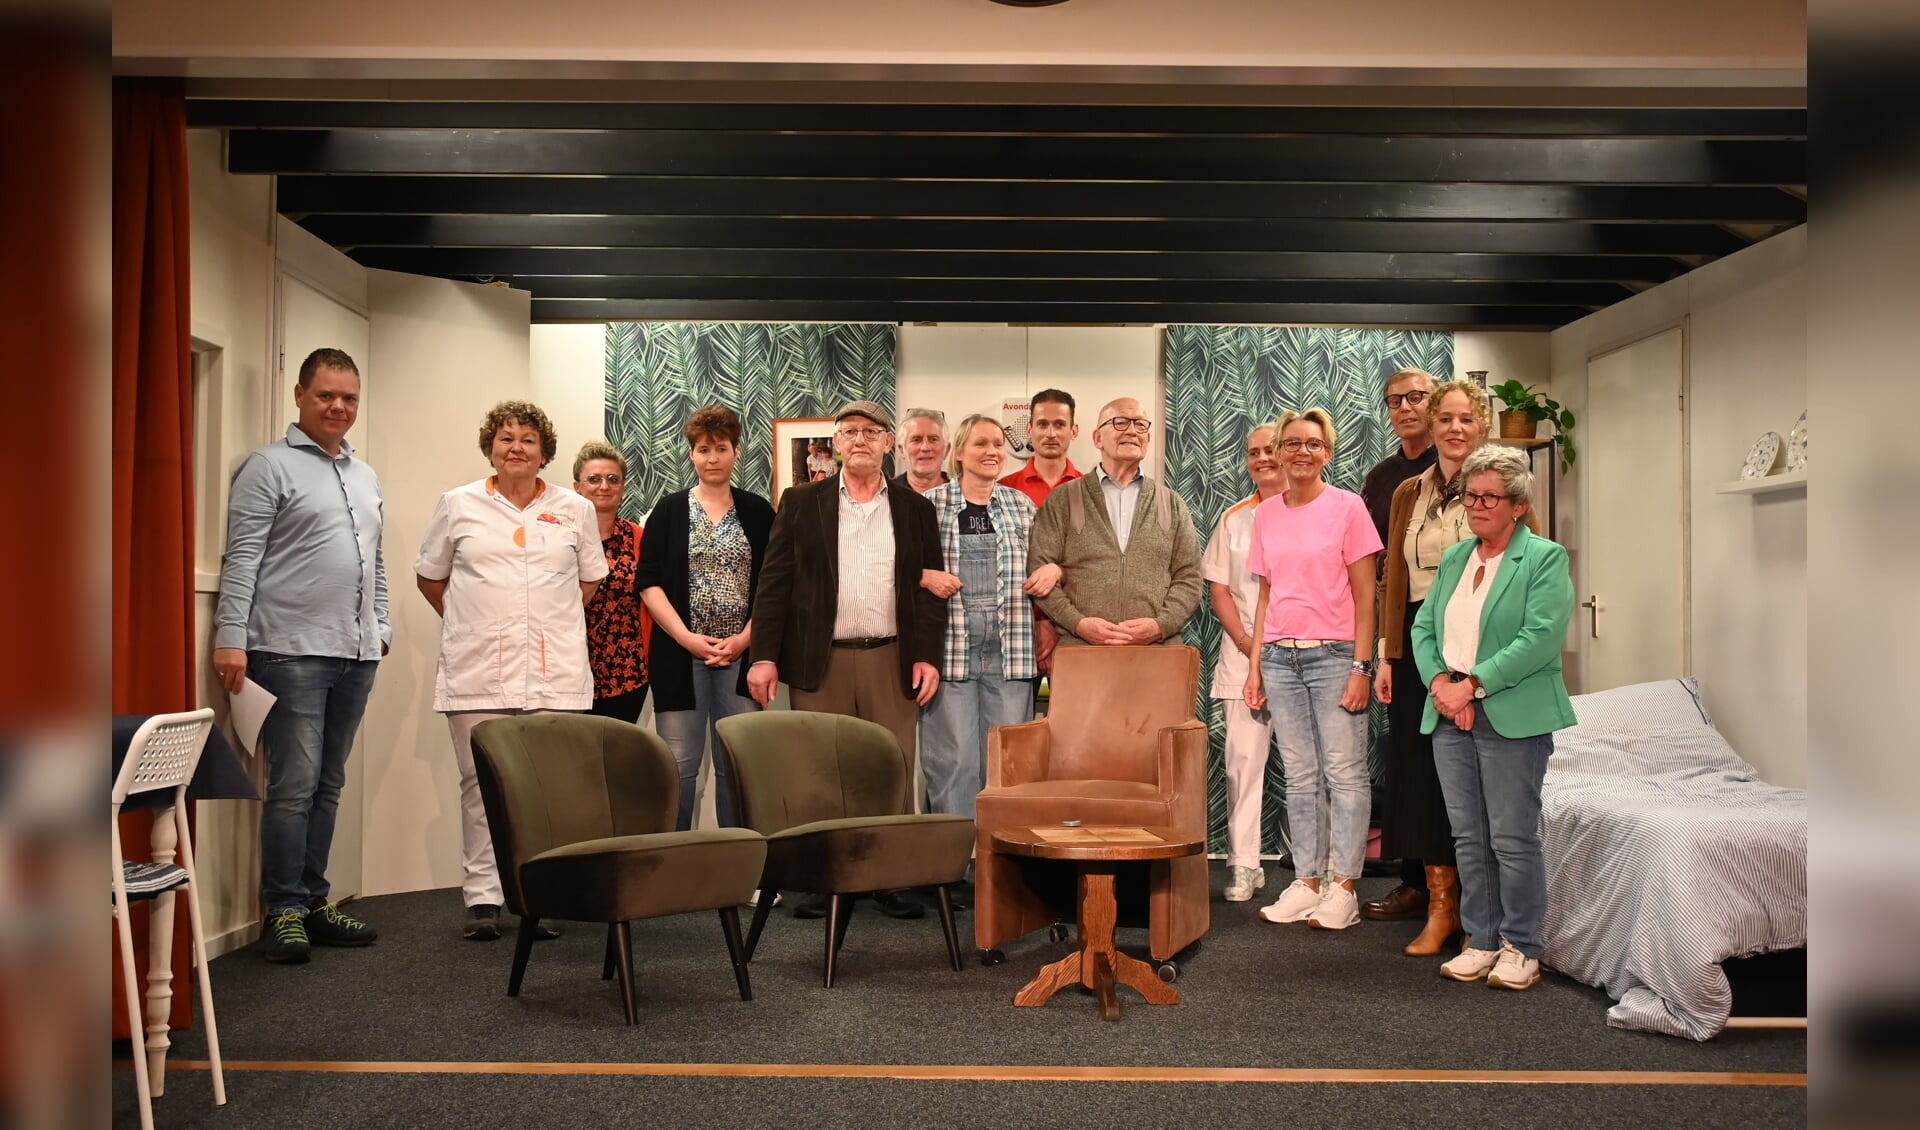 De toneelgroep van T.A.O. Wildenborch bezorgde het publiek een hilarische avond. Foto: Johan Braakman